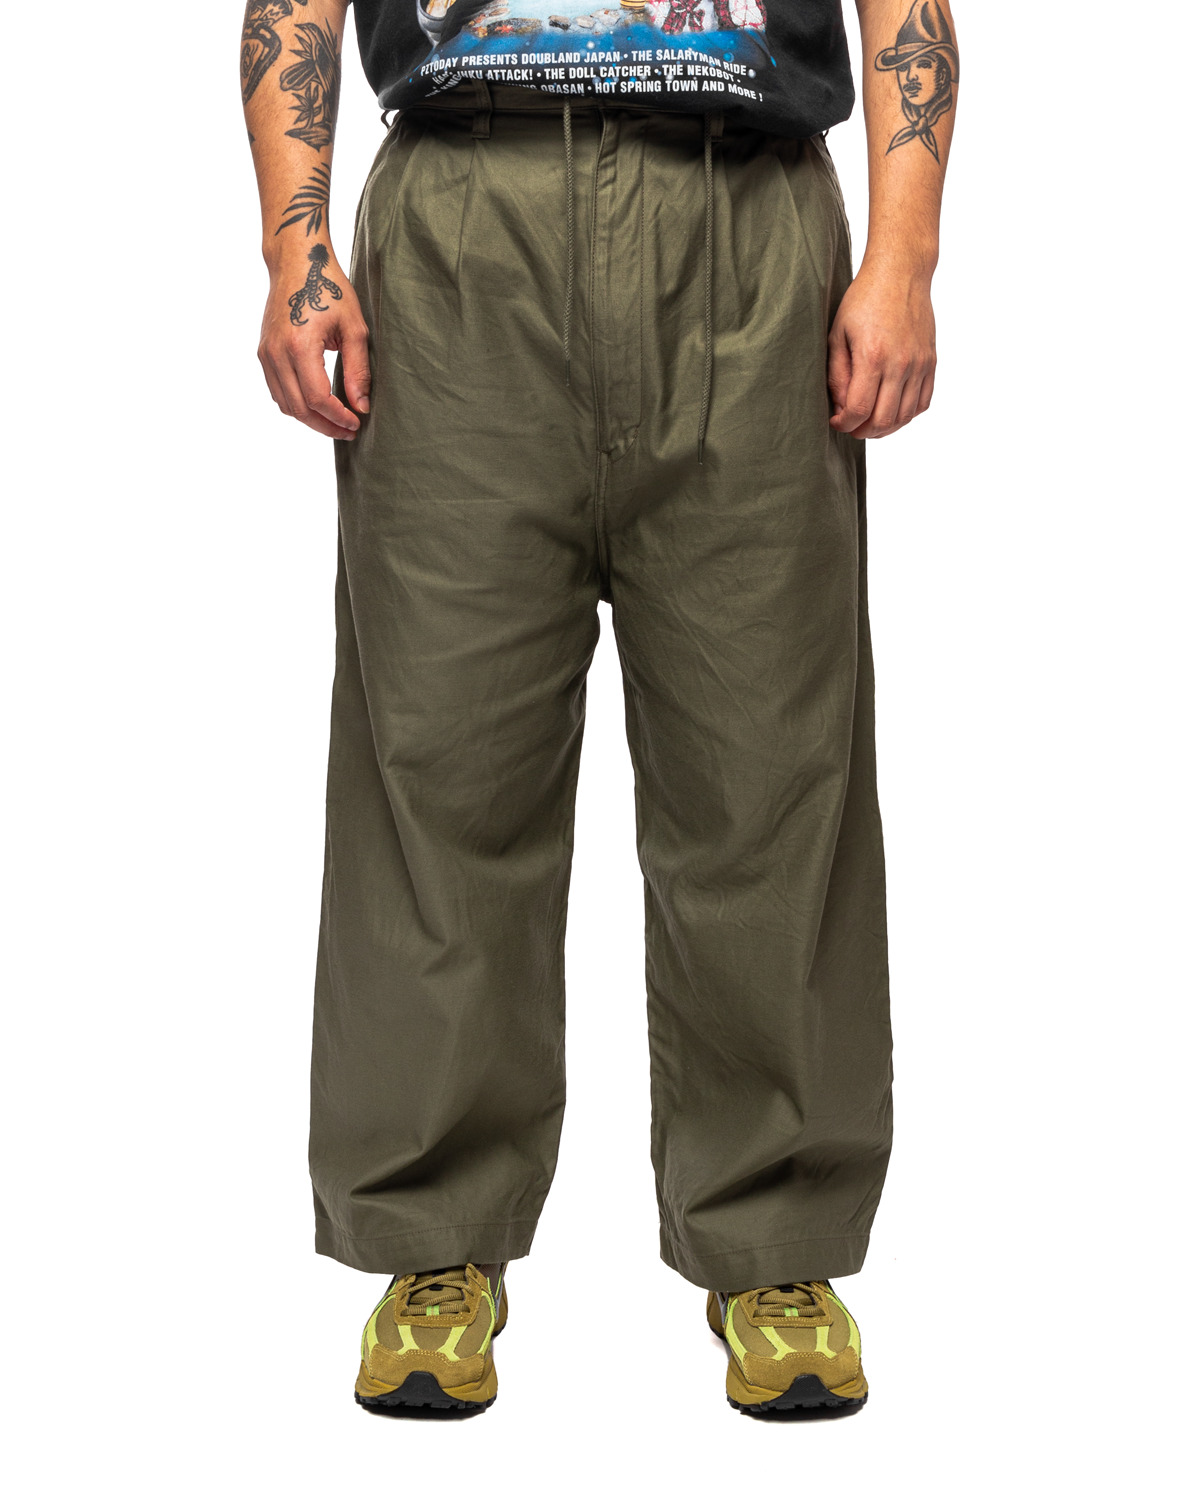 Khaki Paneled Trousers HL-P011-051 - 1